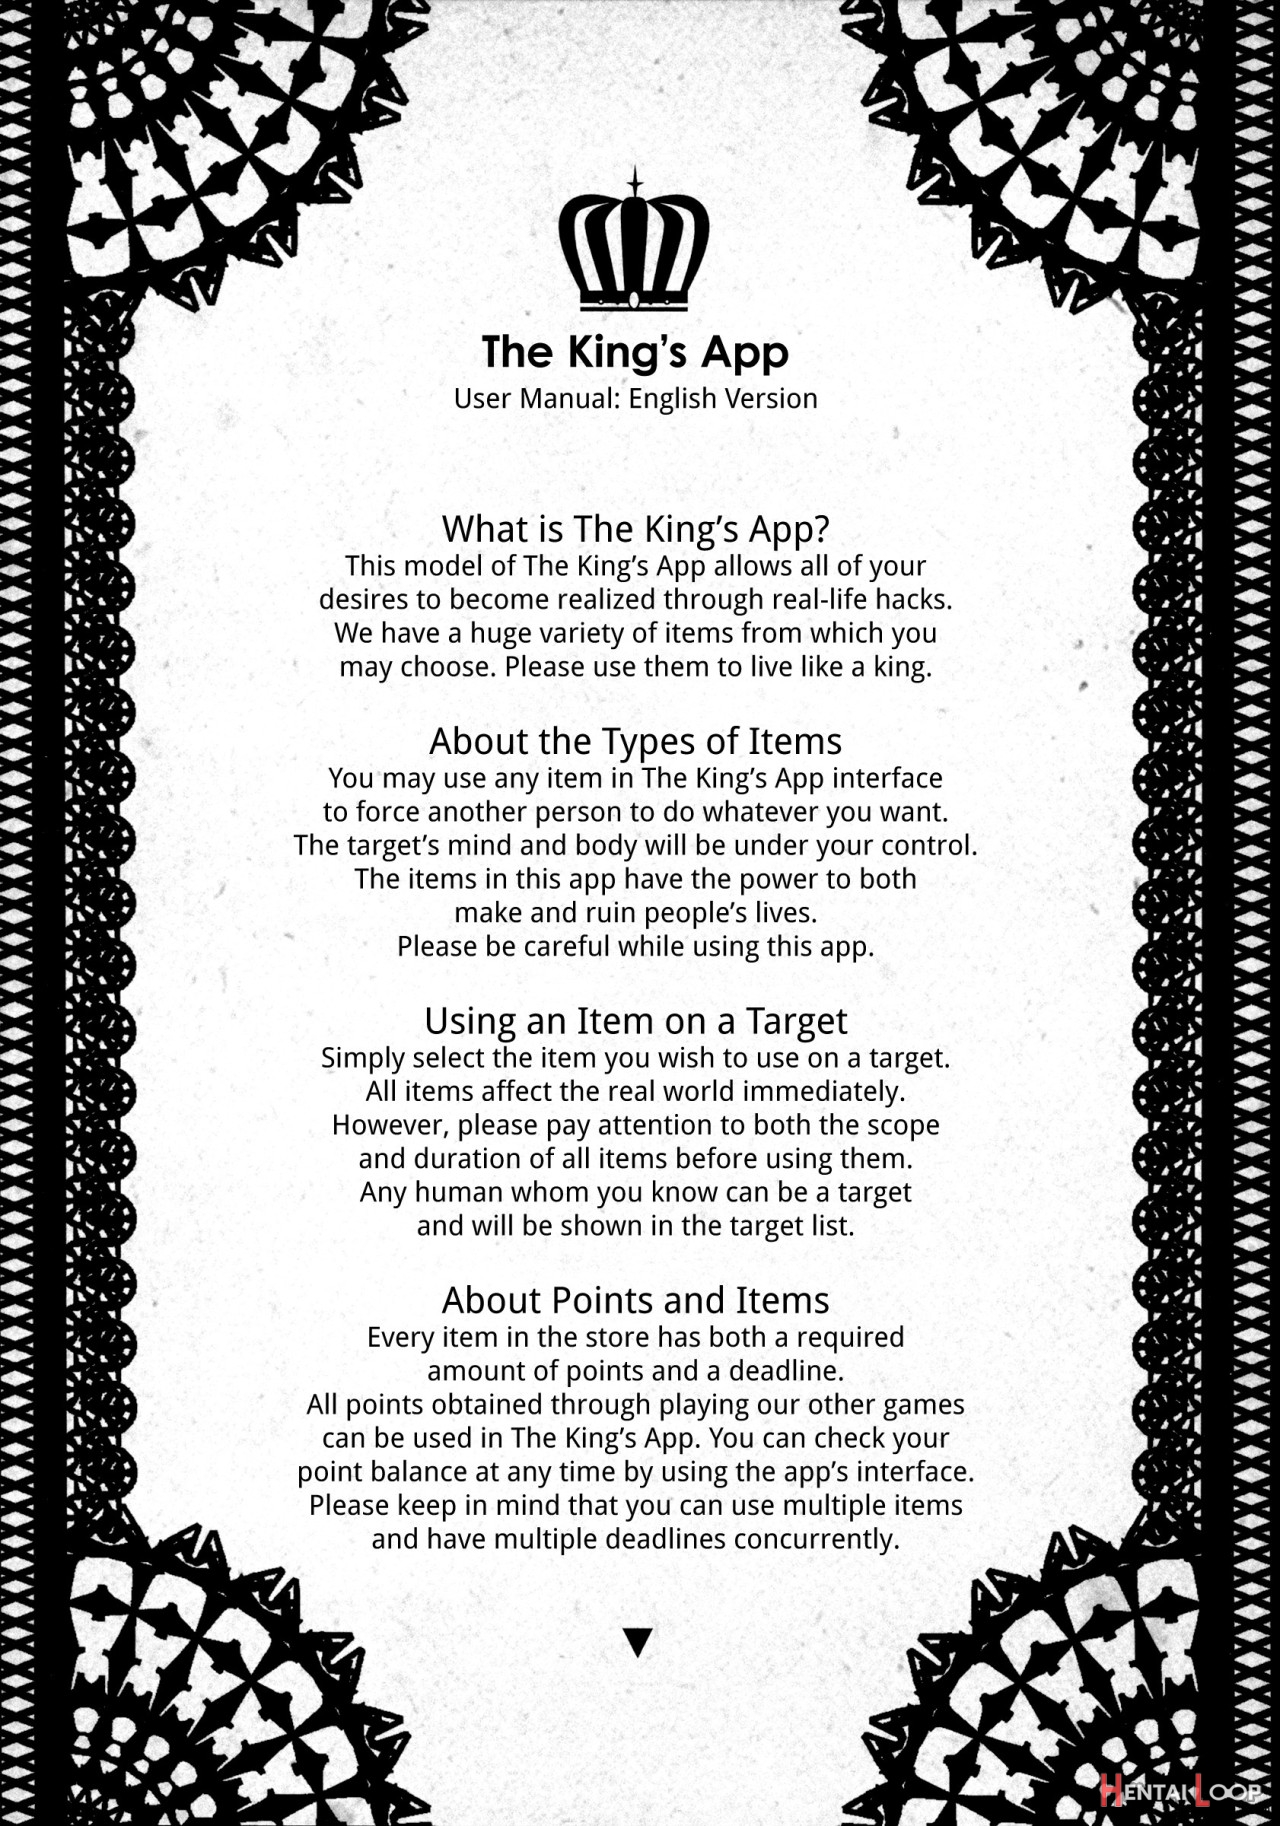 Ou-sama Appli - King App 1-1.5 page 2